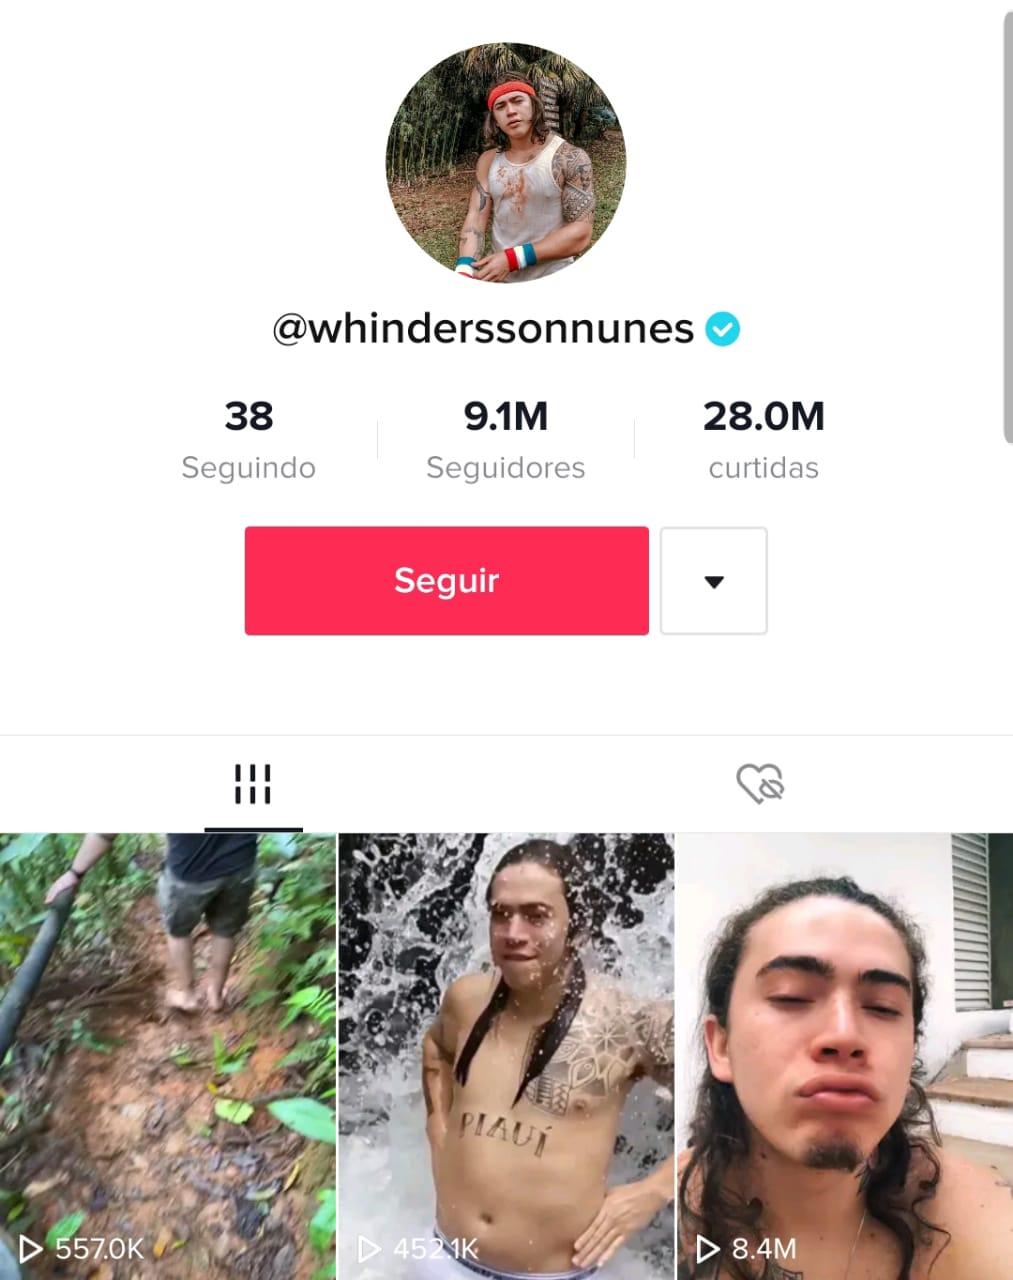 Whindersson nunes, humorista brasileiro, foto de perfil dele, ultimos três vídeos publicados